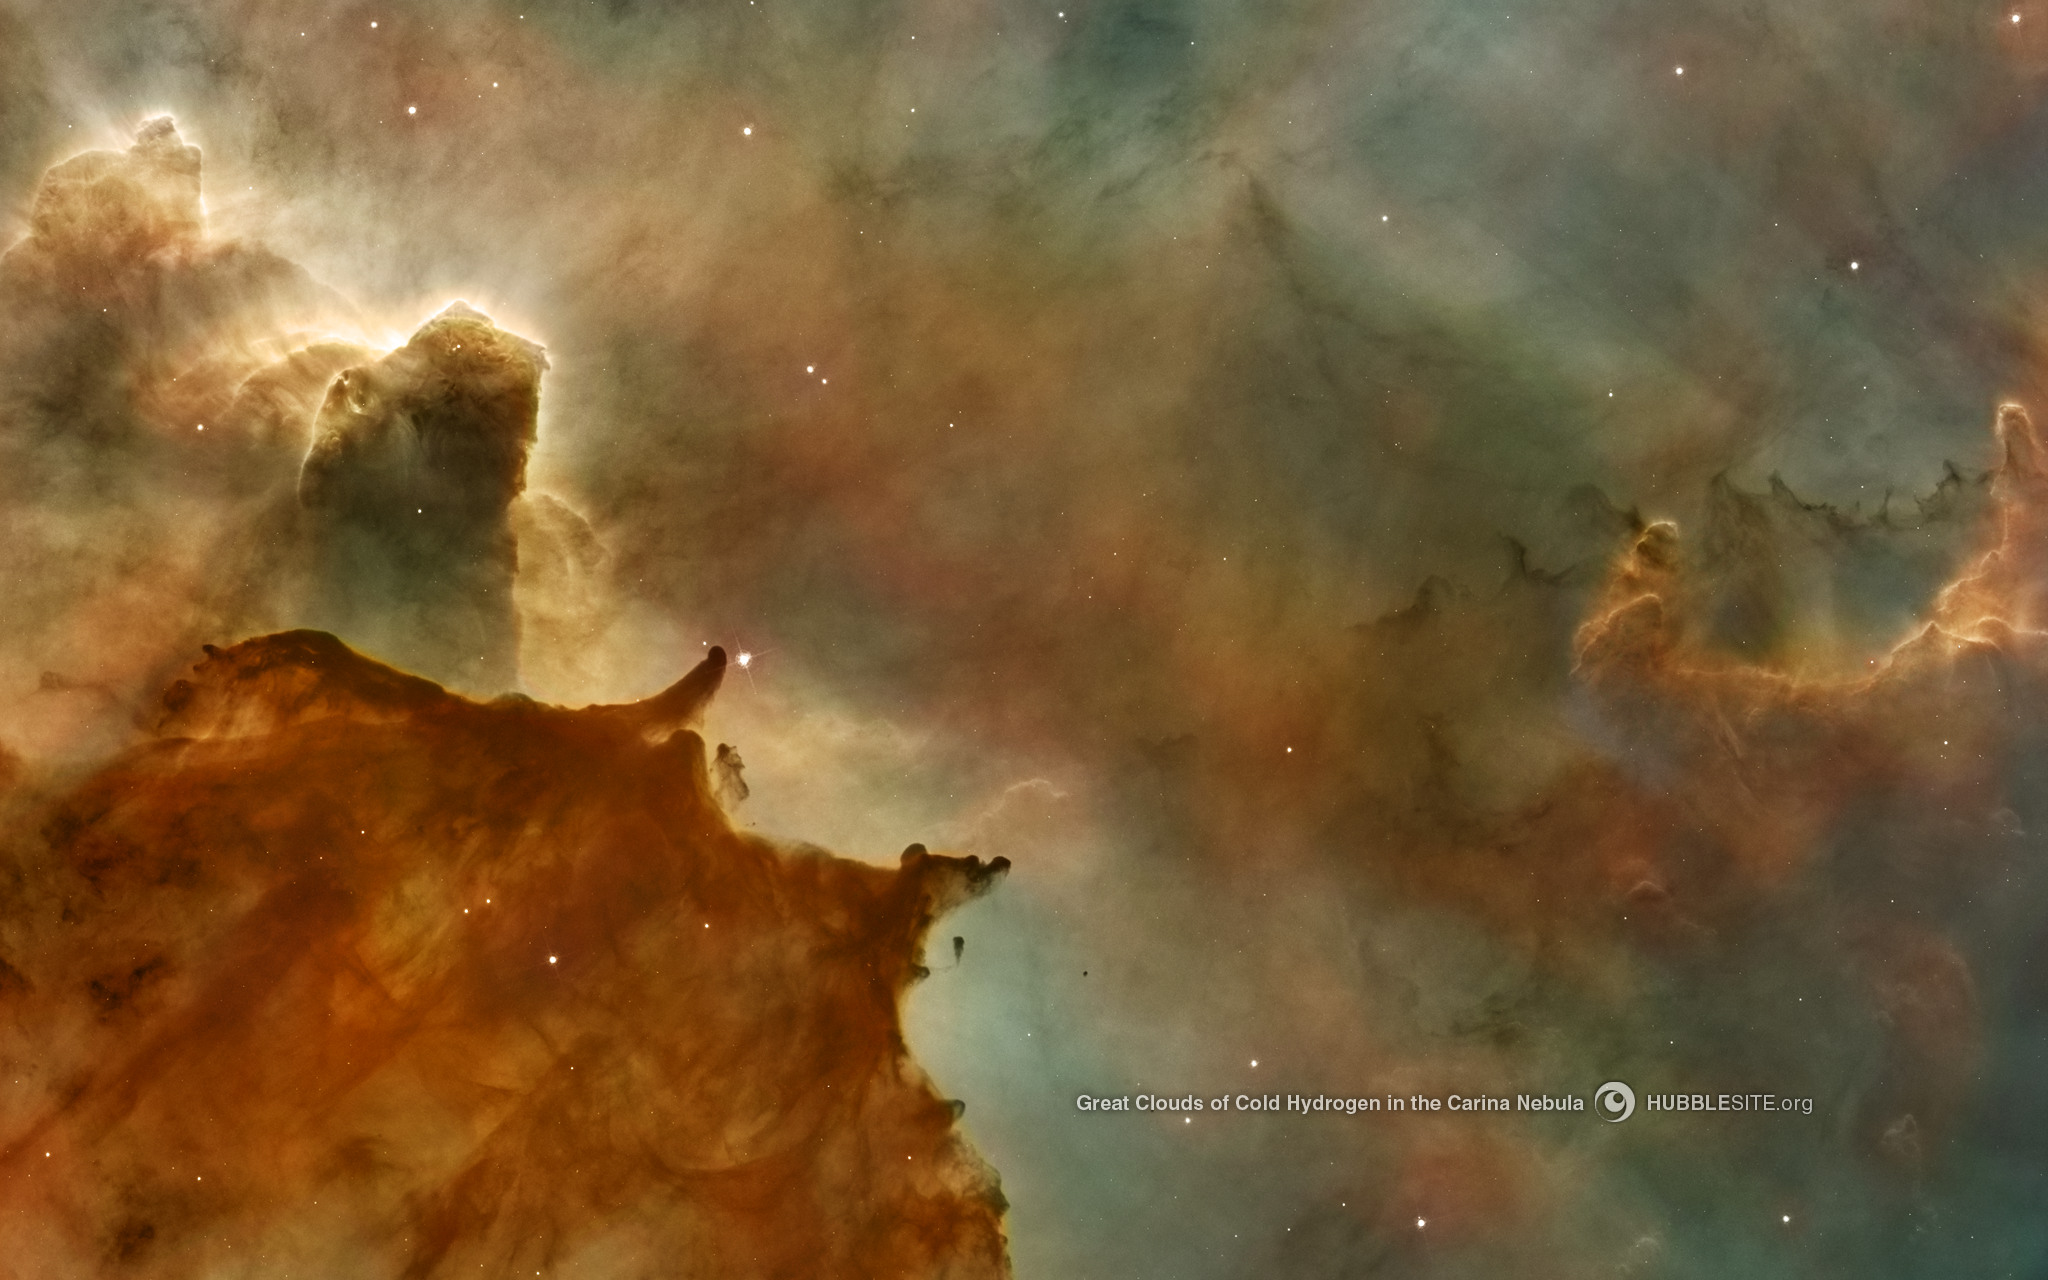 Cold Hydrogen Clouds in the Carina Nebula